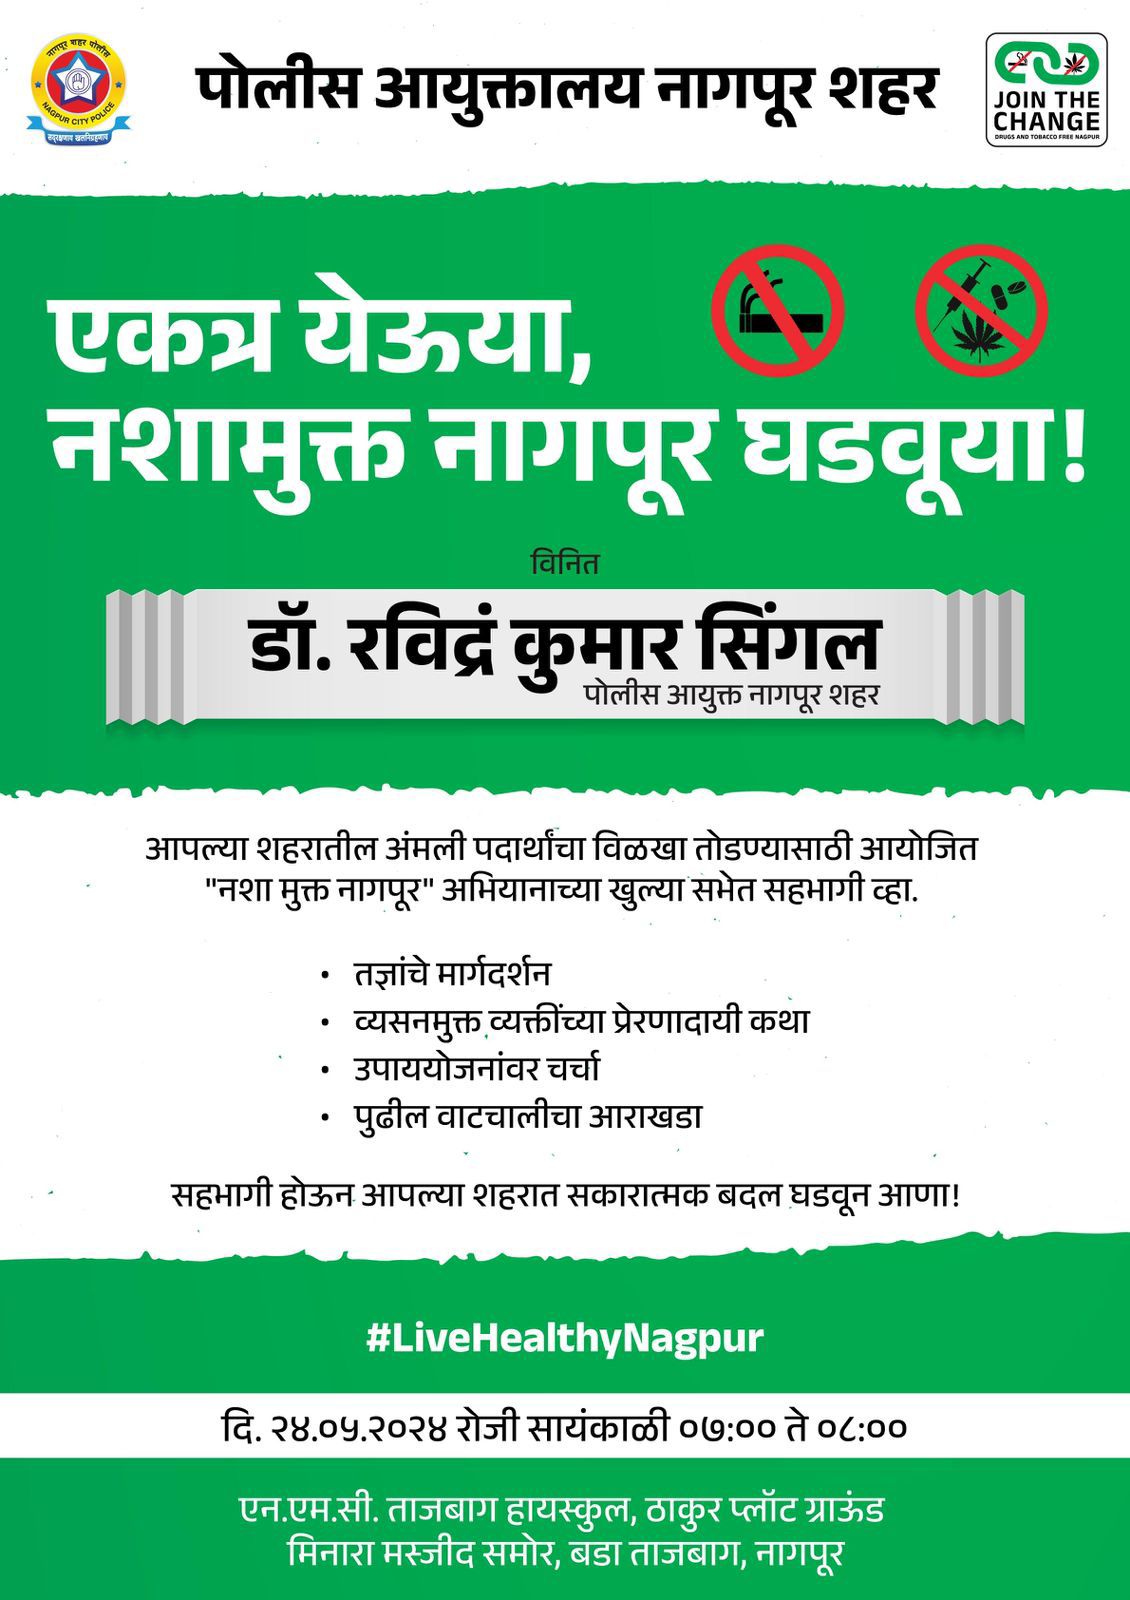 Let's Make Nagpur drug free! - Dr. Ravinder Singal